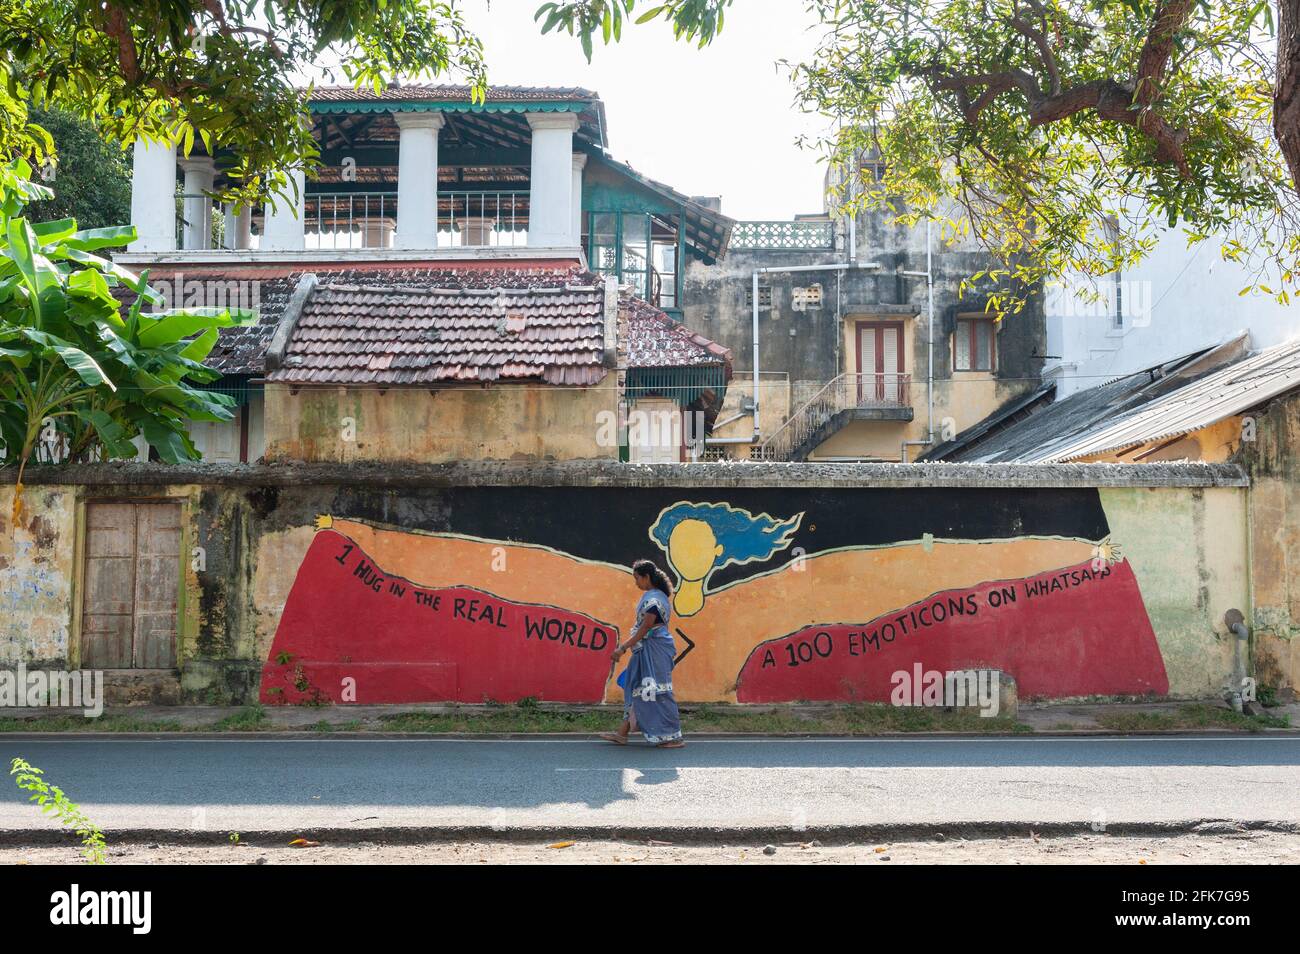 PONDICHERRY, INDIA - 2021 aprile: Un abbraccio nel mondo reale vale più di 100 emoticon su whatsapp. Graffiti dipinte durante la corona. Foto Stock